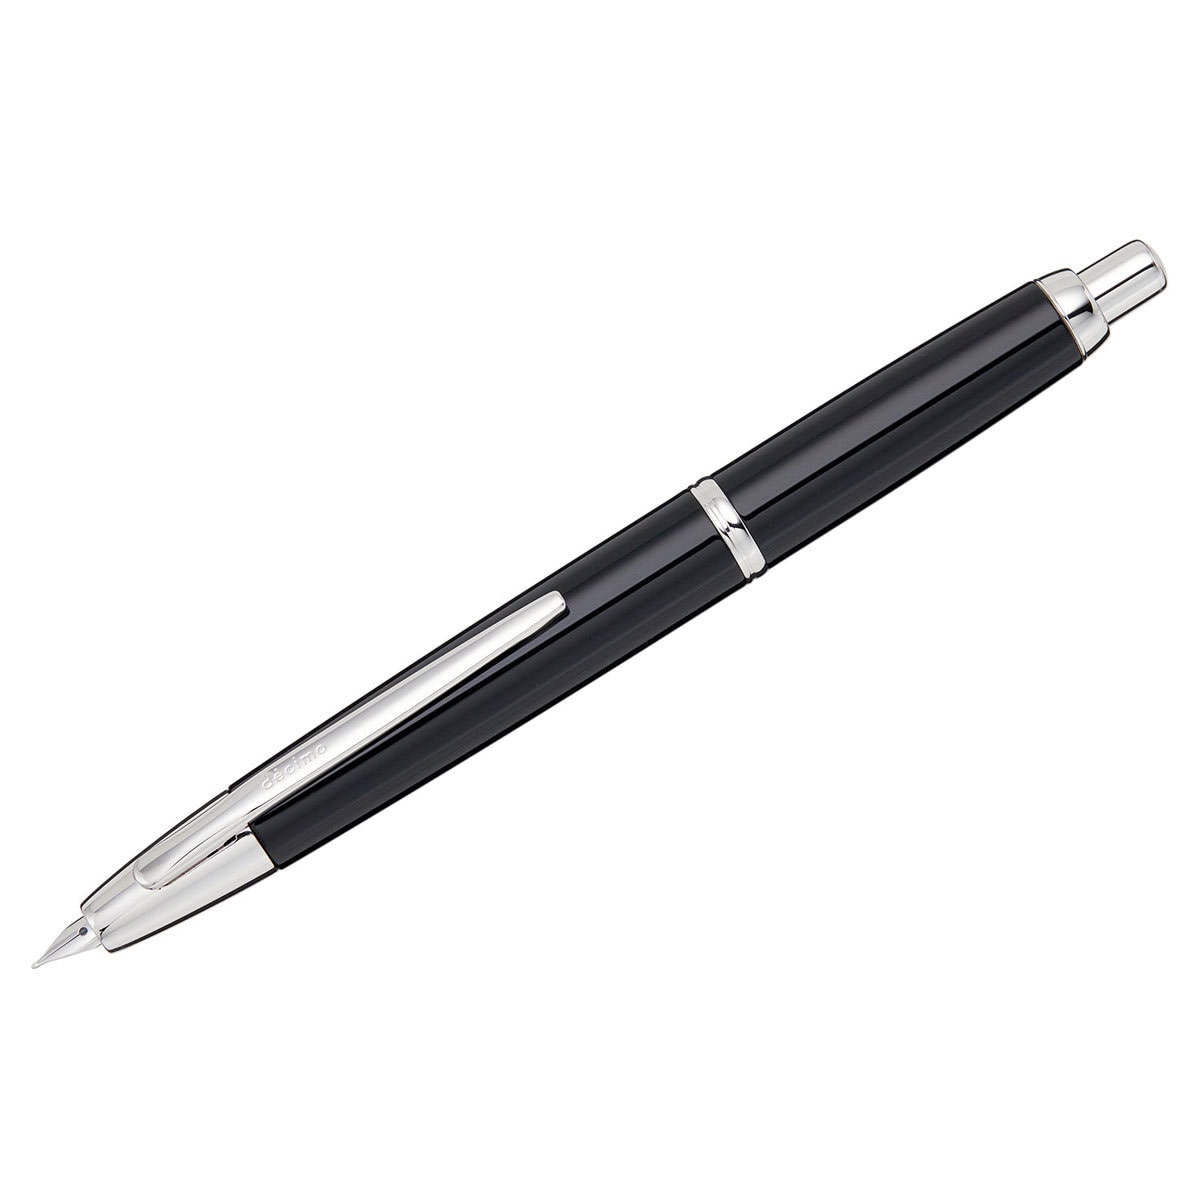 Sakura Pigma Micron Black Pen Everyday Writing Journaling Pen